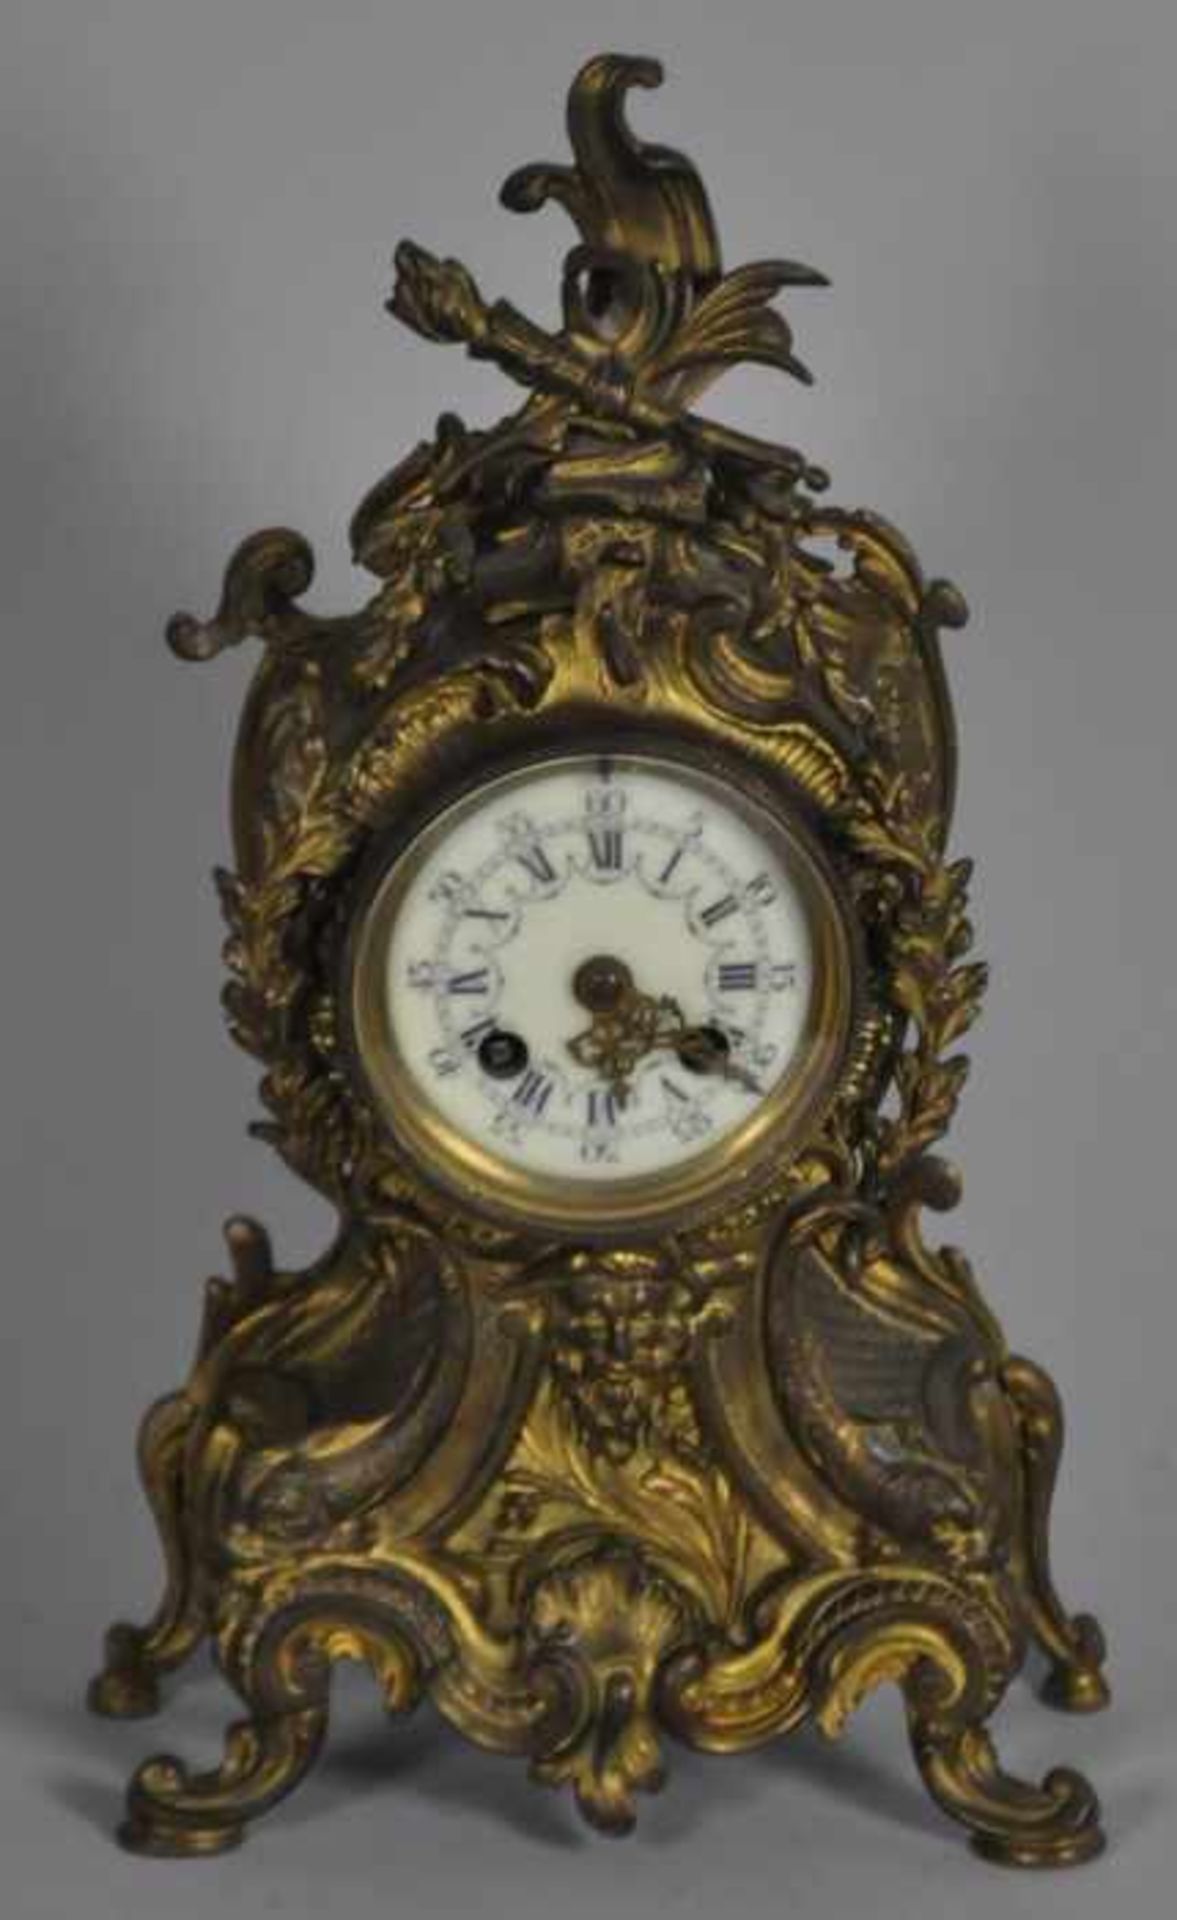 KAMINUHR reich dekorierter Stand, Metall vergoldet, altersbedingt leicht gedunkelt, darin Uhr mit